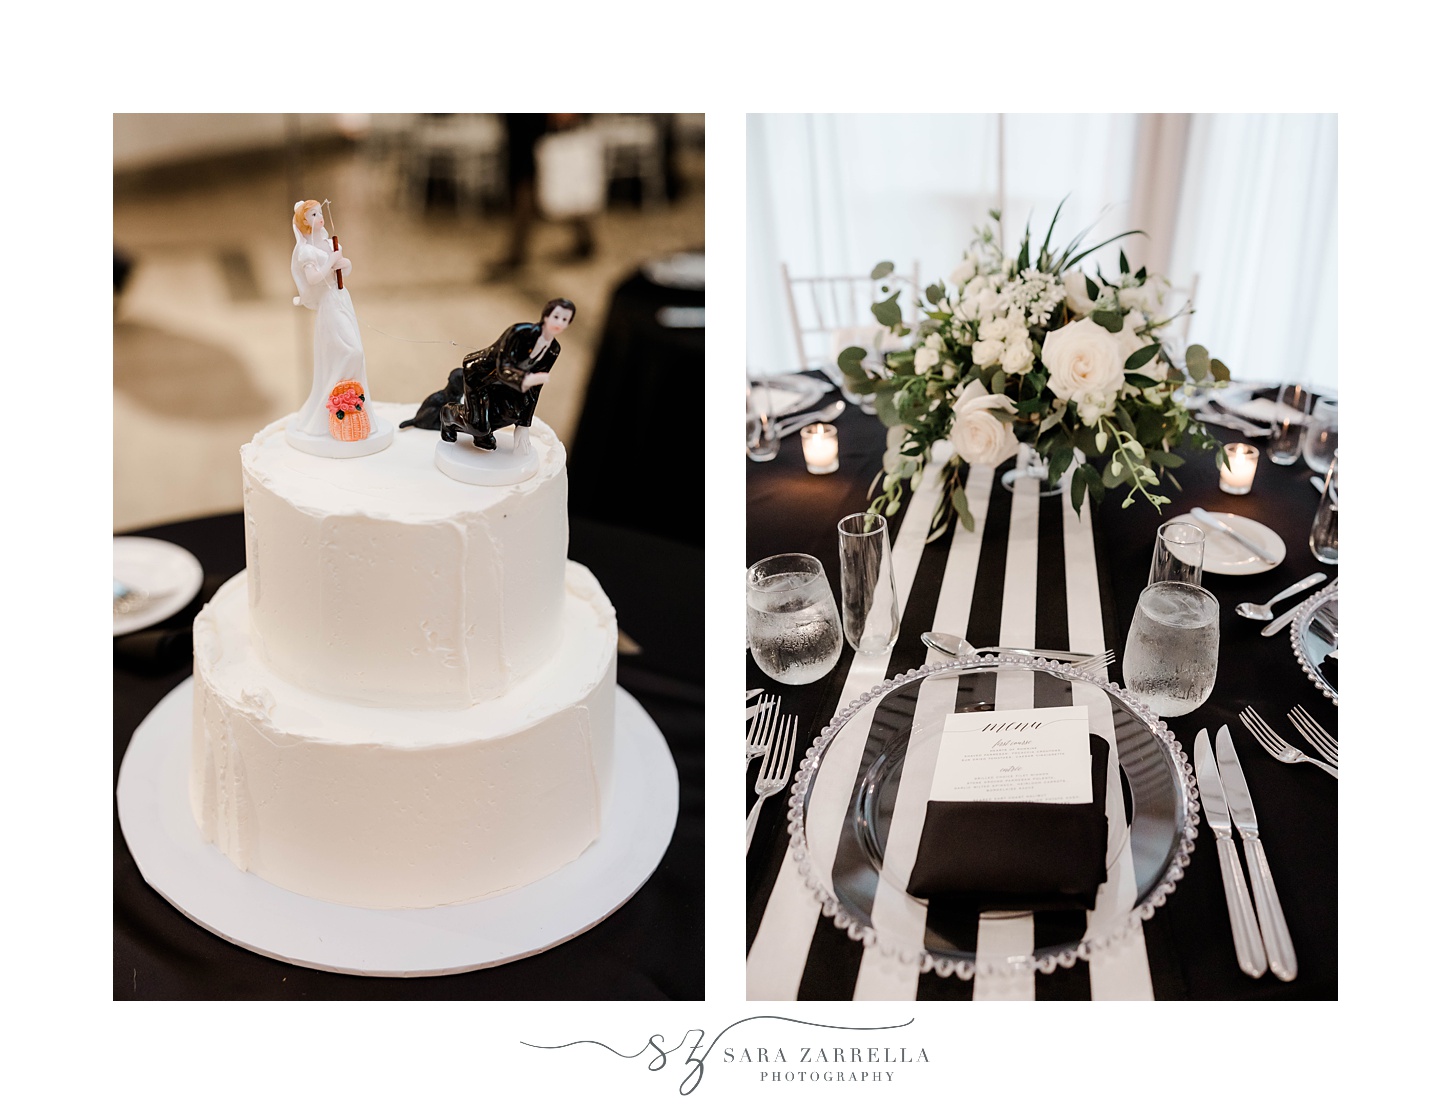 wedding cake with custom figures on top